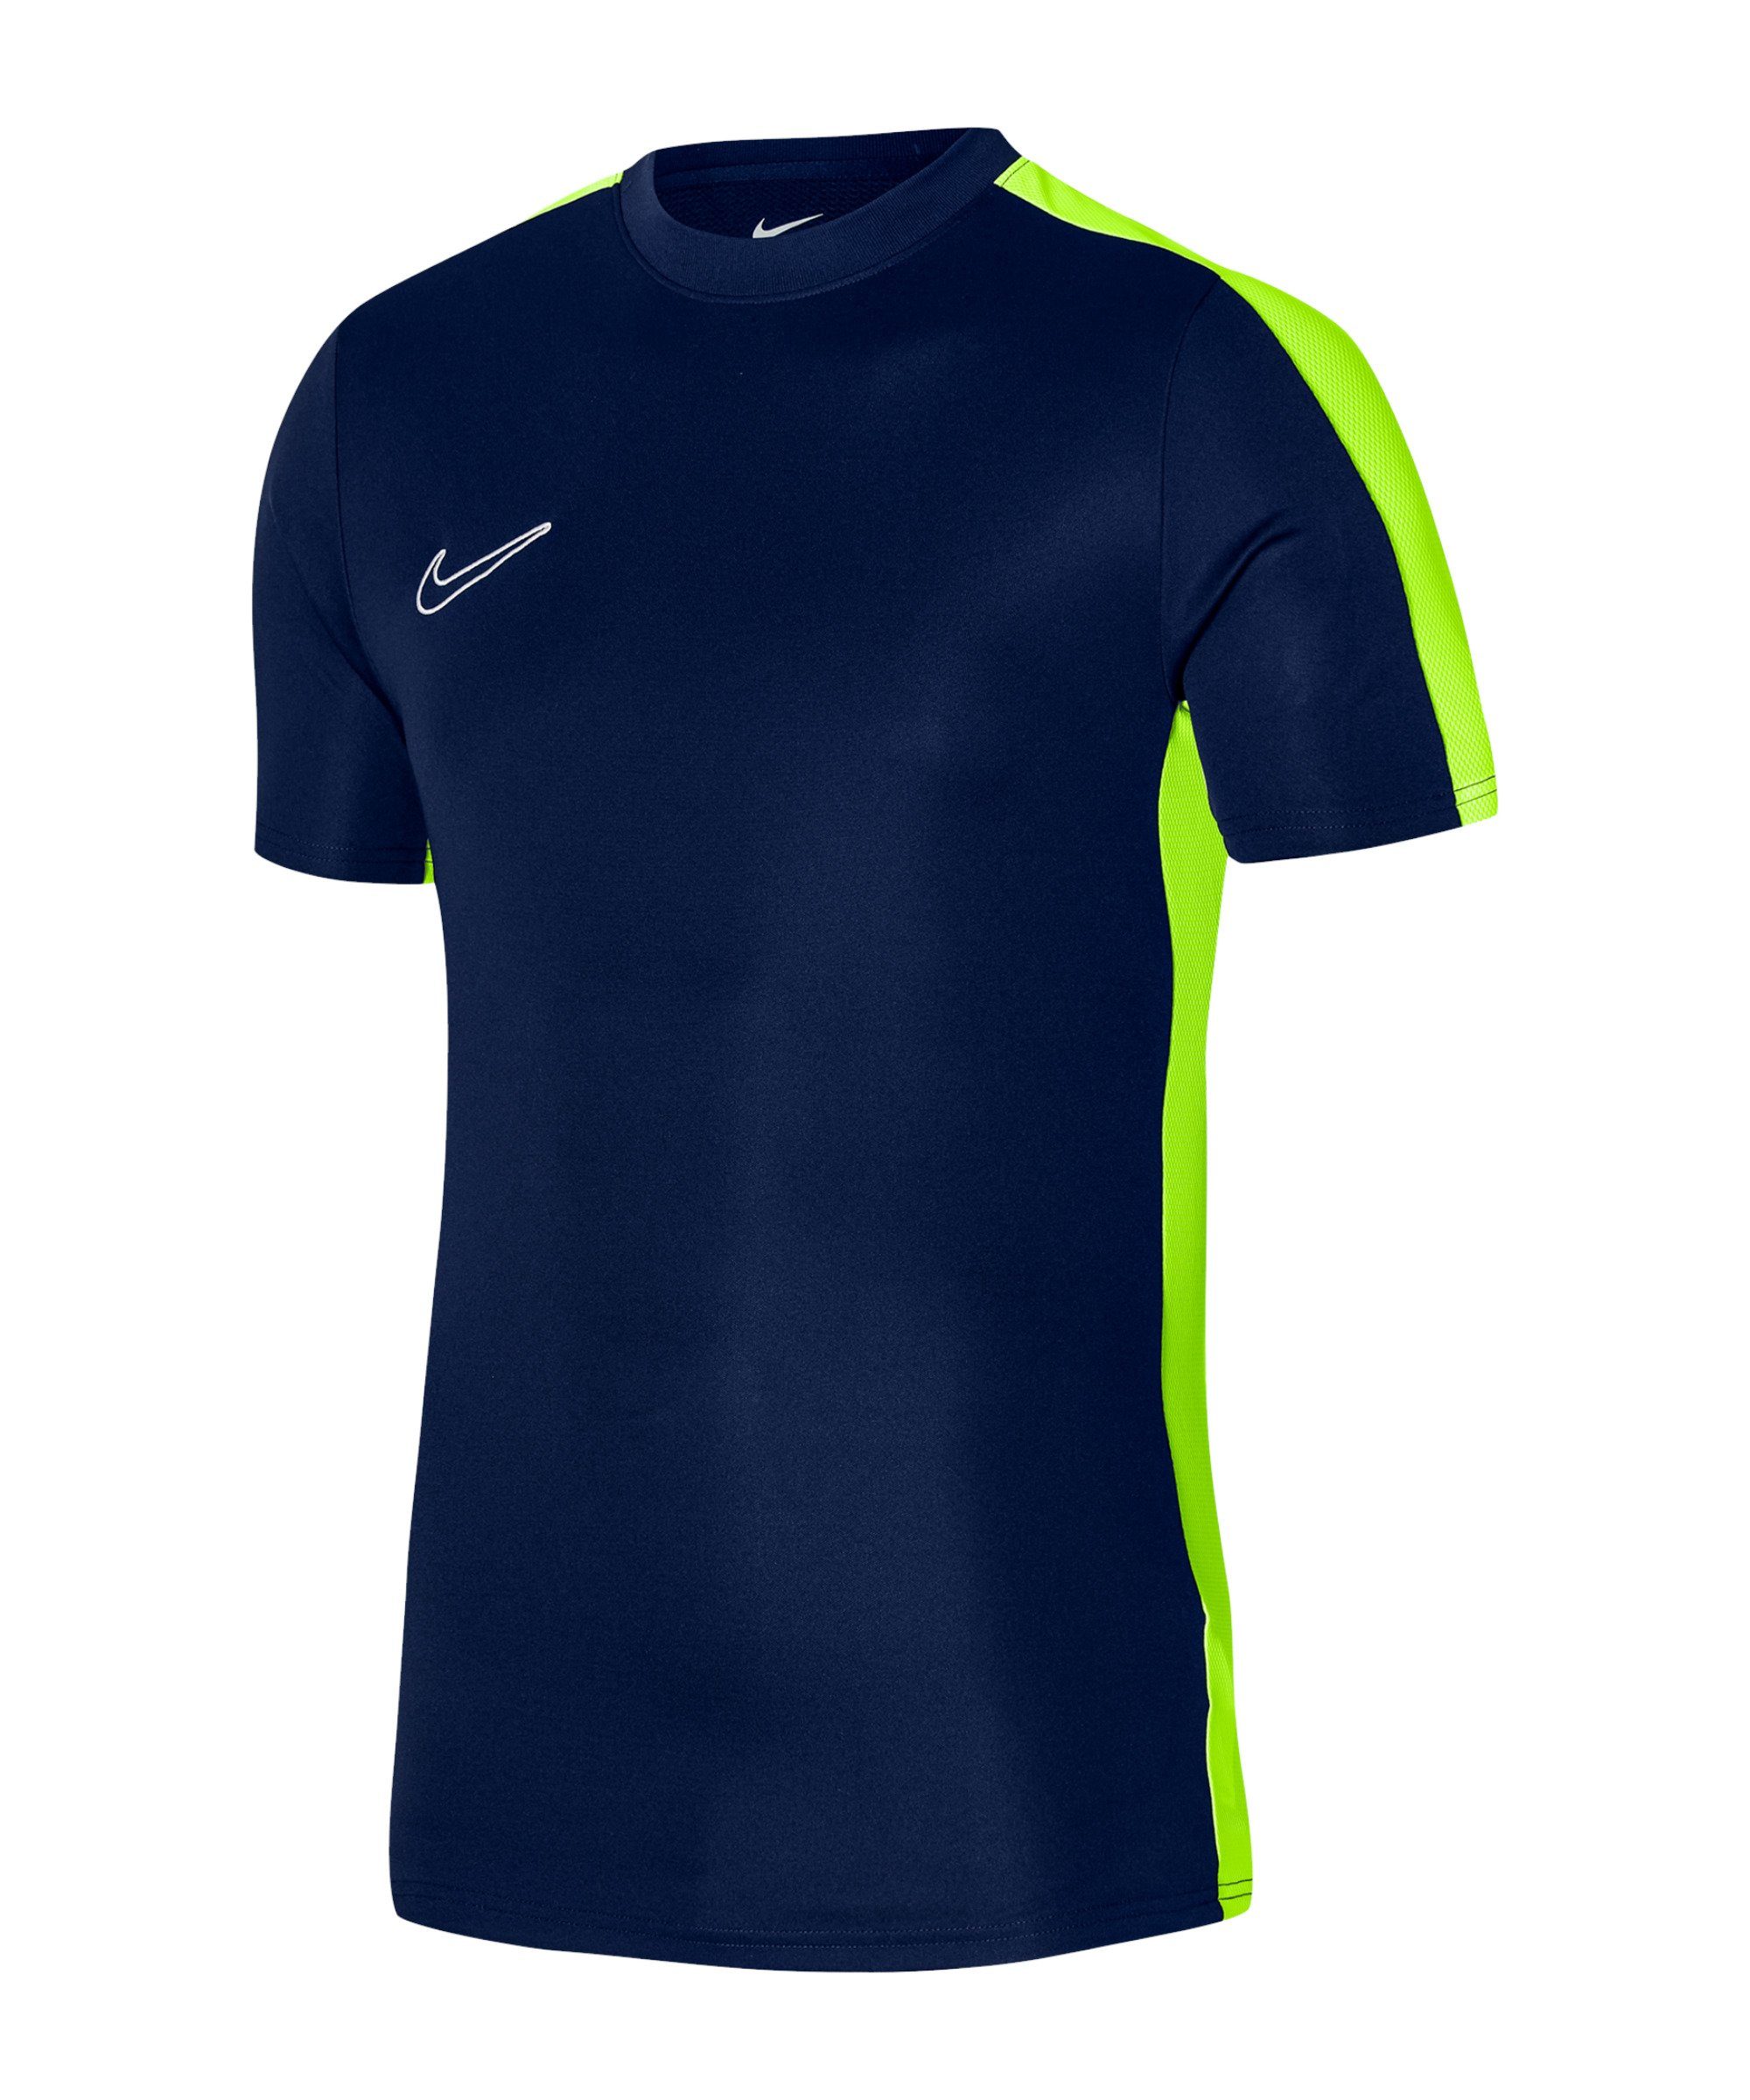 Kids Academy 23 Nike T-Shirt blaugrauweiss Trainingsshirt default